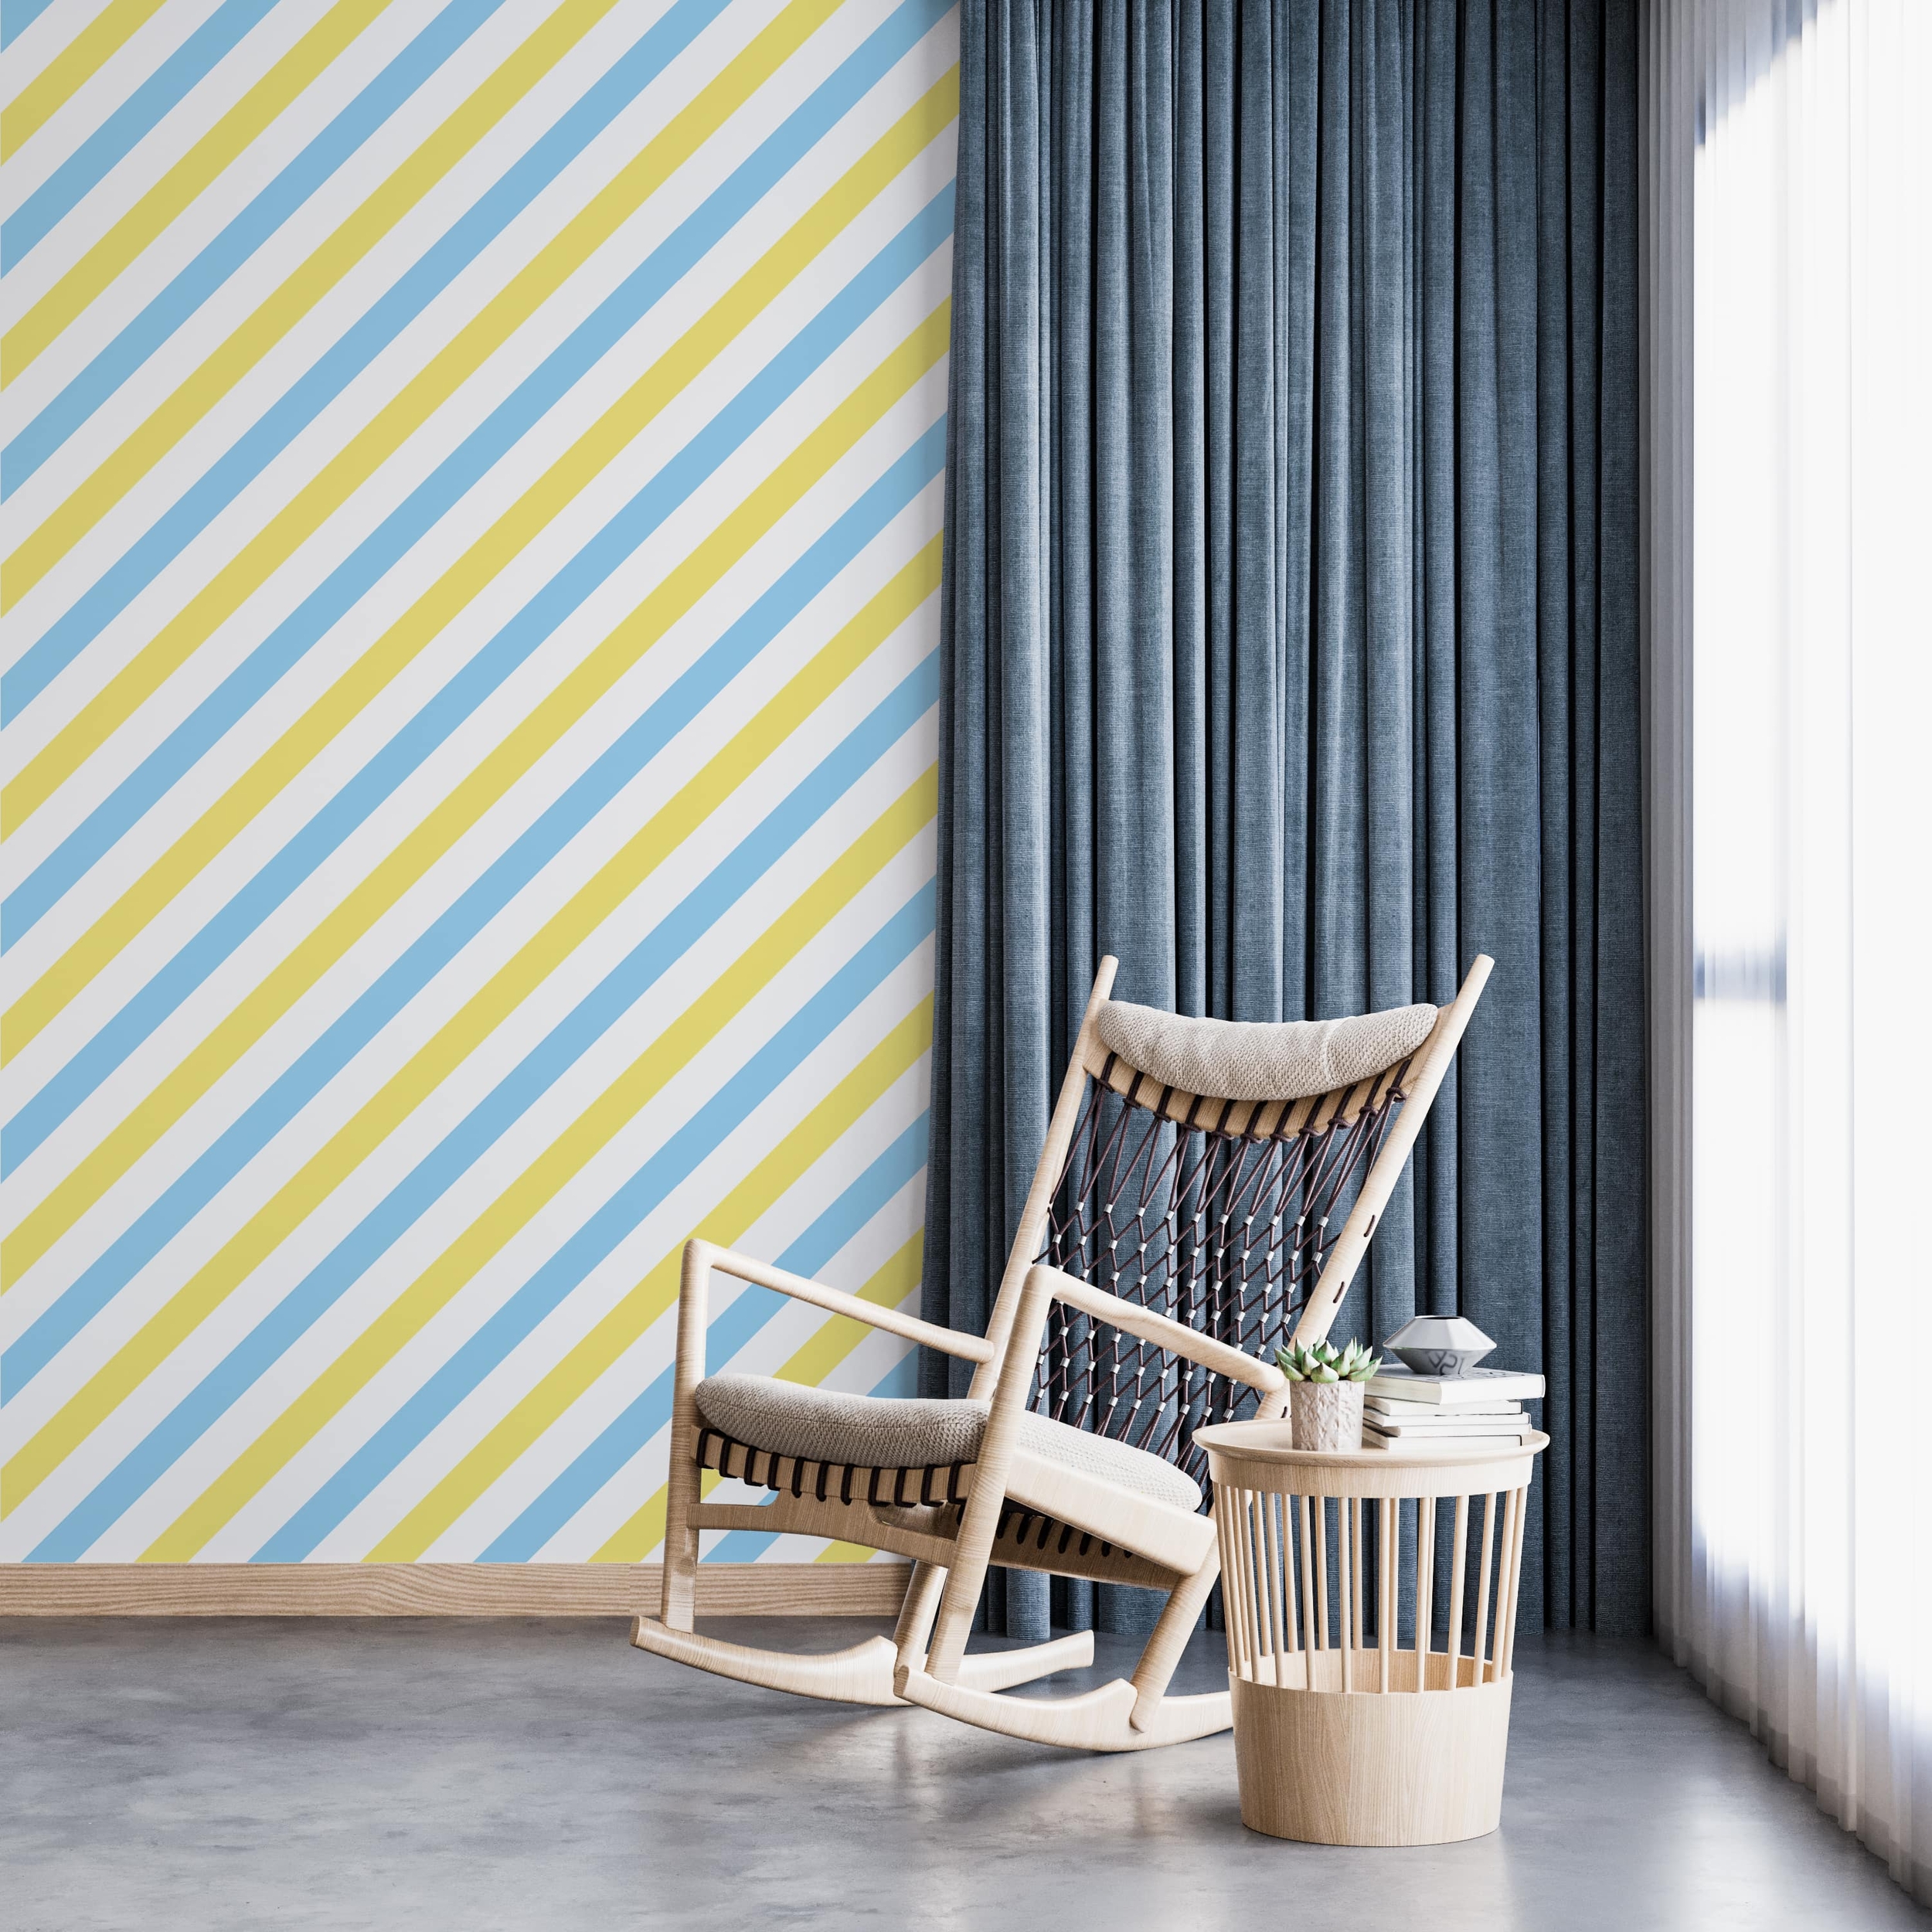 PP52-mur-papier-peint-adhesif-decoratif-revetement-vinyle-rayures-diagonales-bleu-et-jaune-renovation-meuble-mur-min